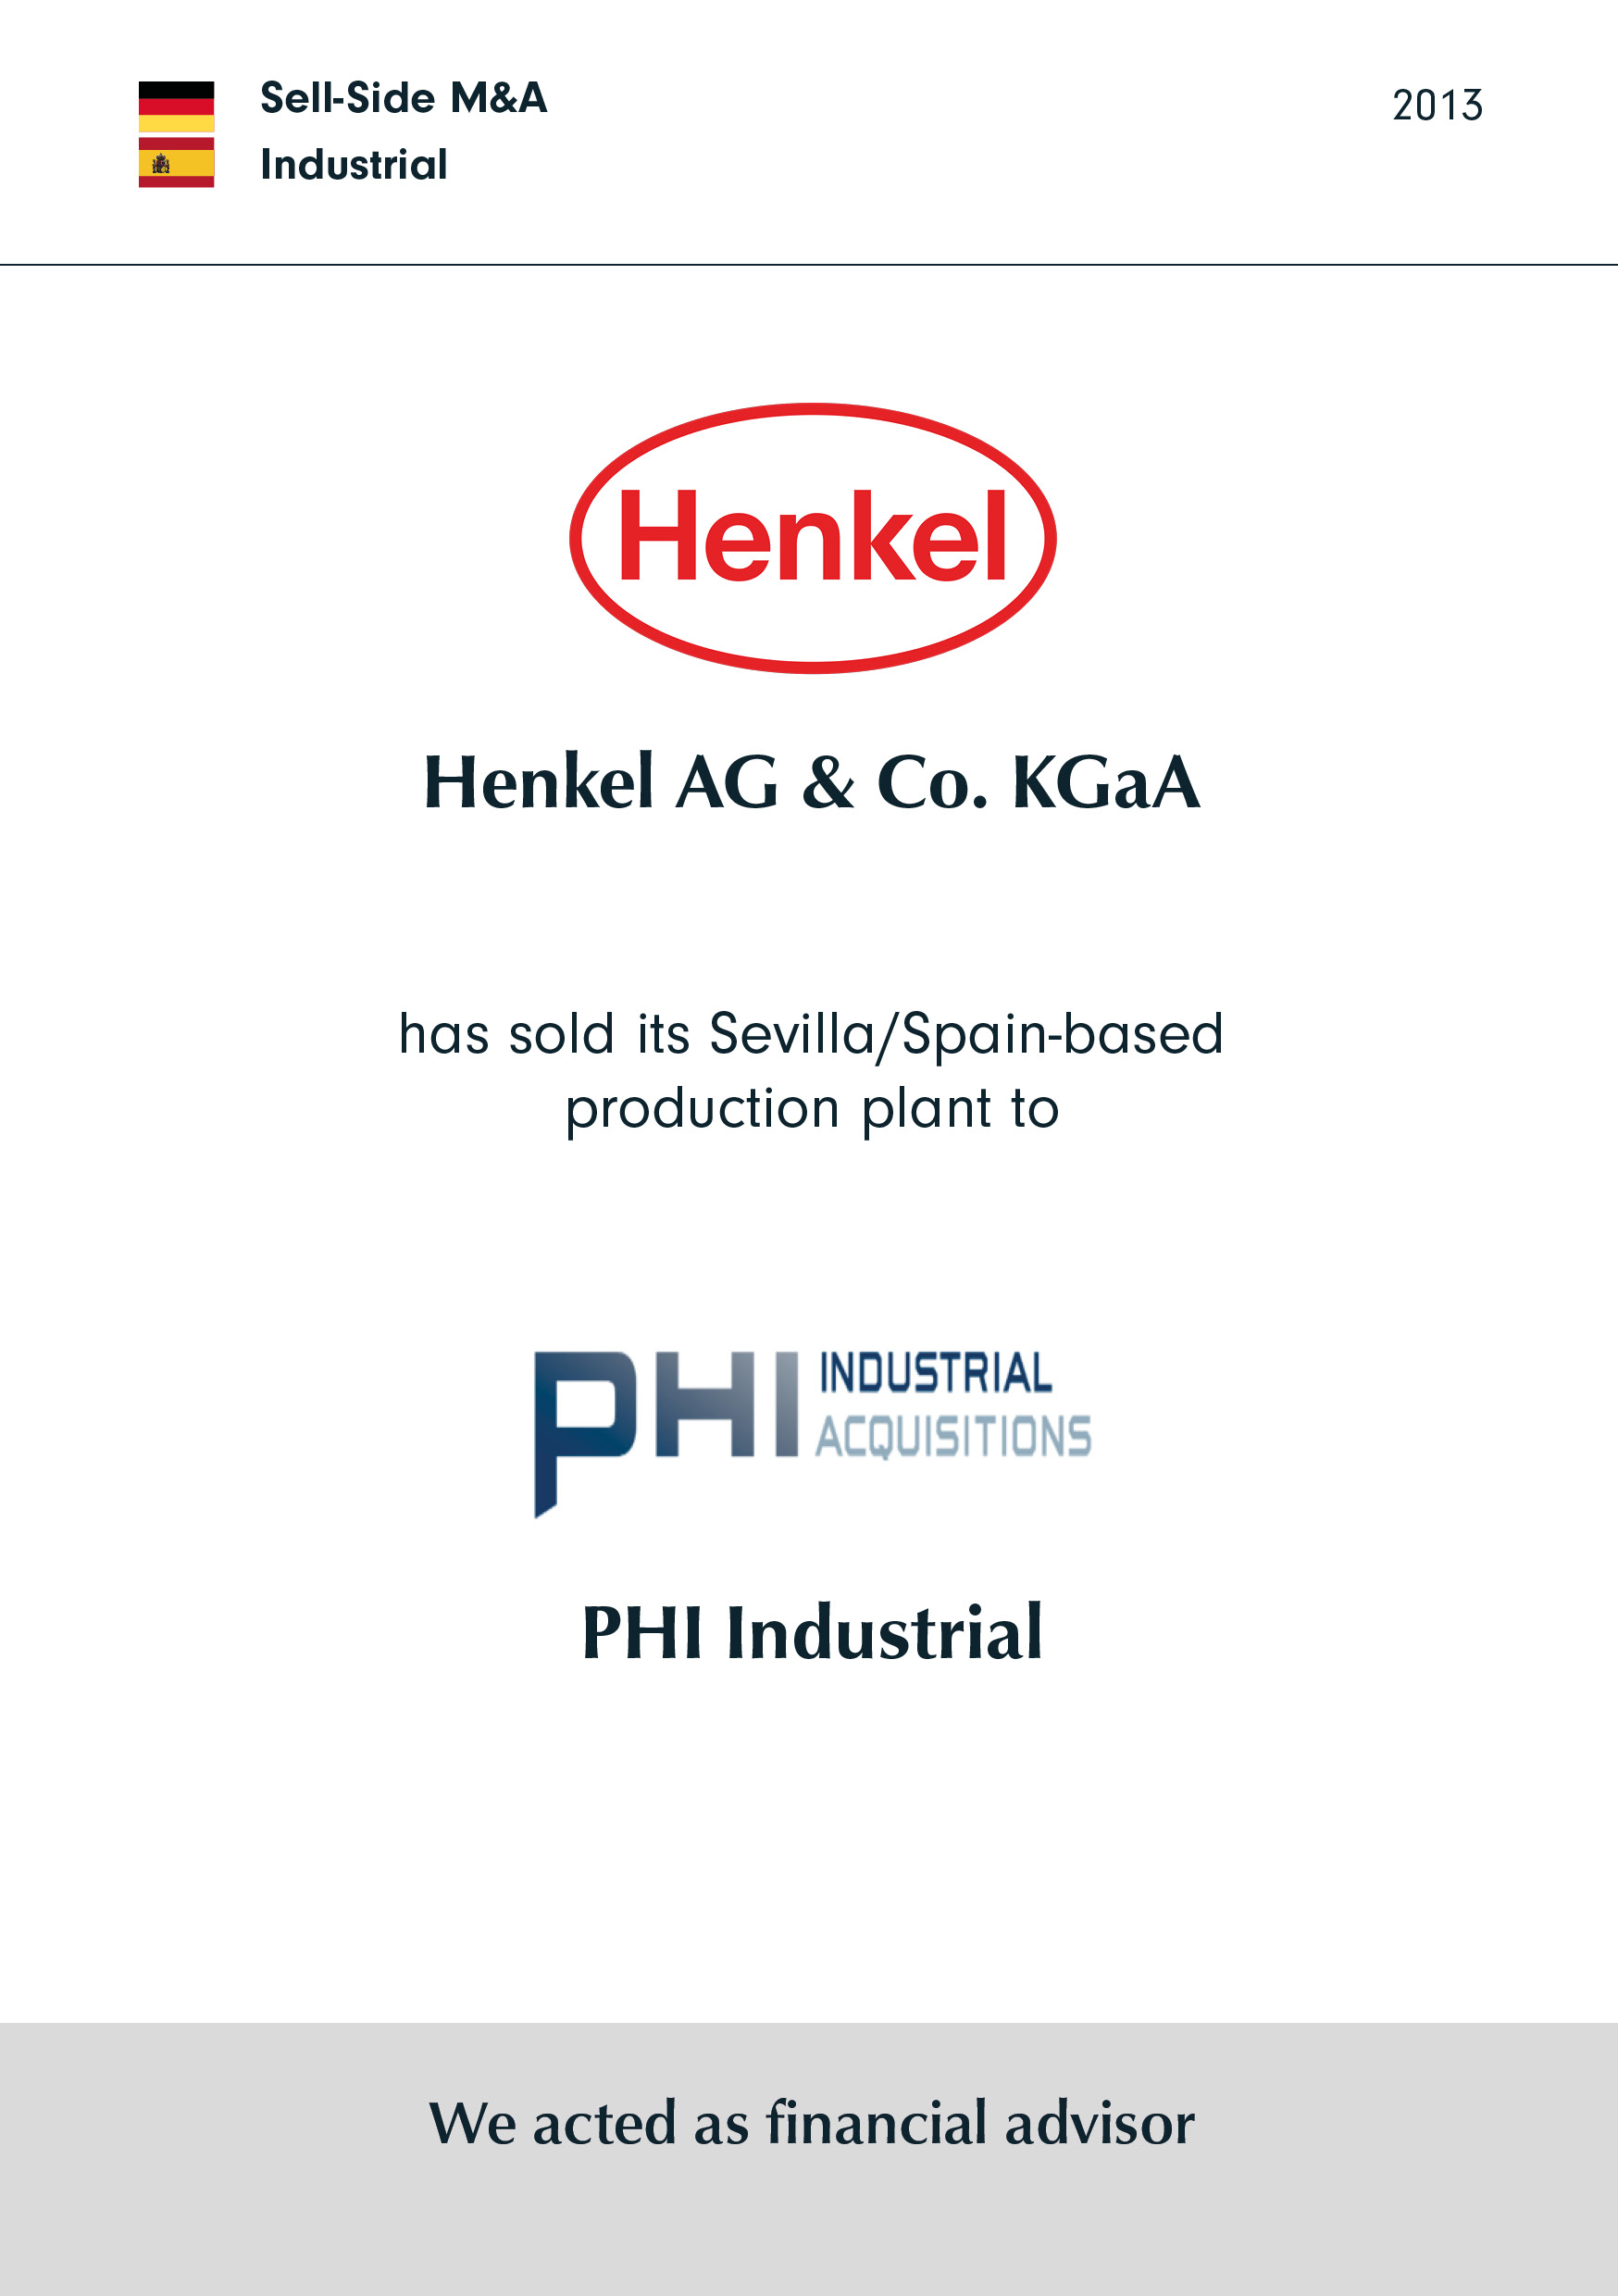 Henkel hat seine Produktionsanlage in Sevilla/Spanien verkauft an PHI